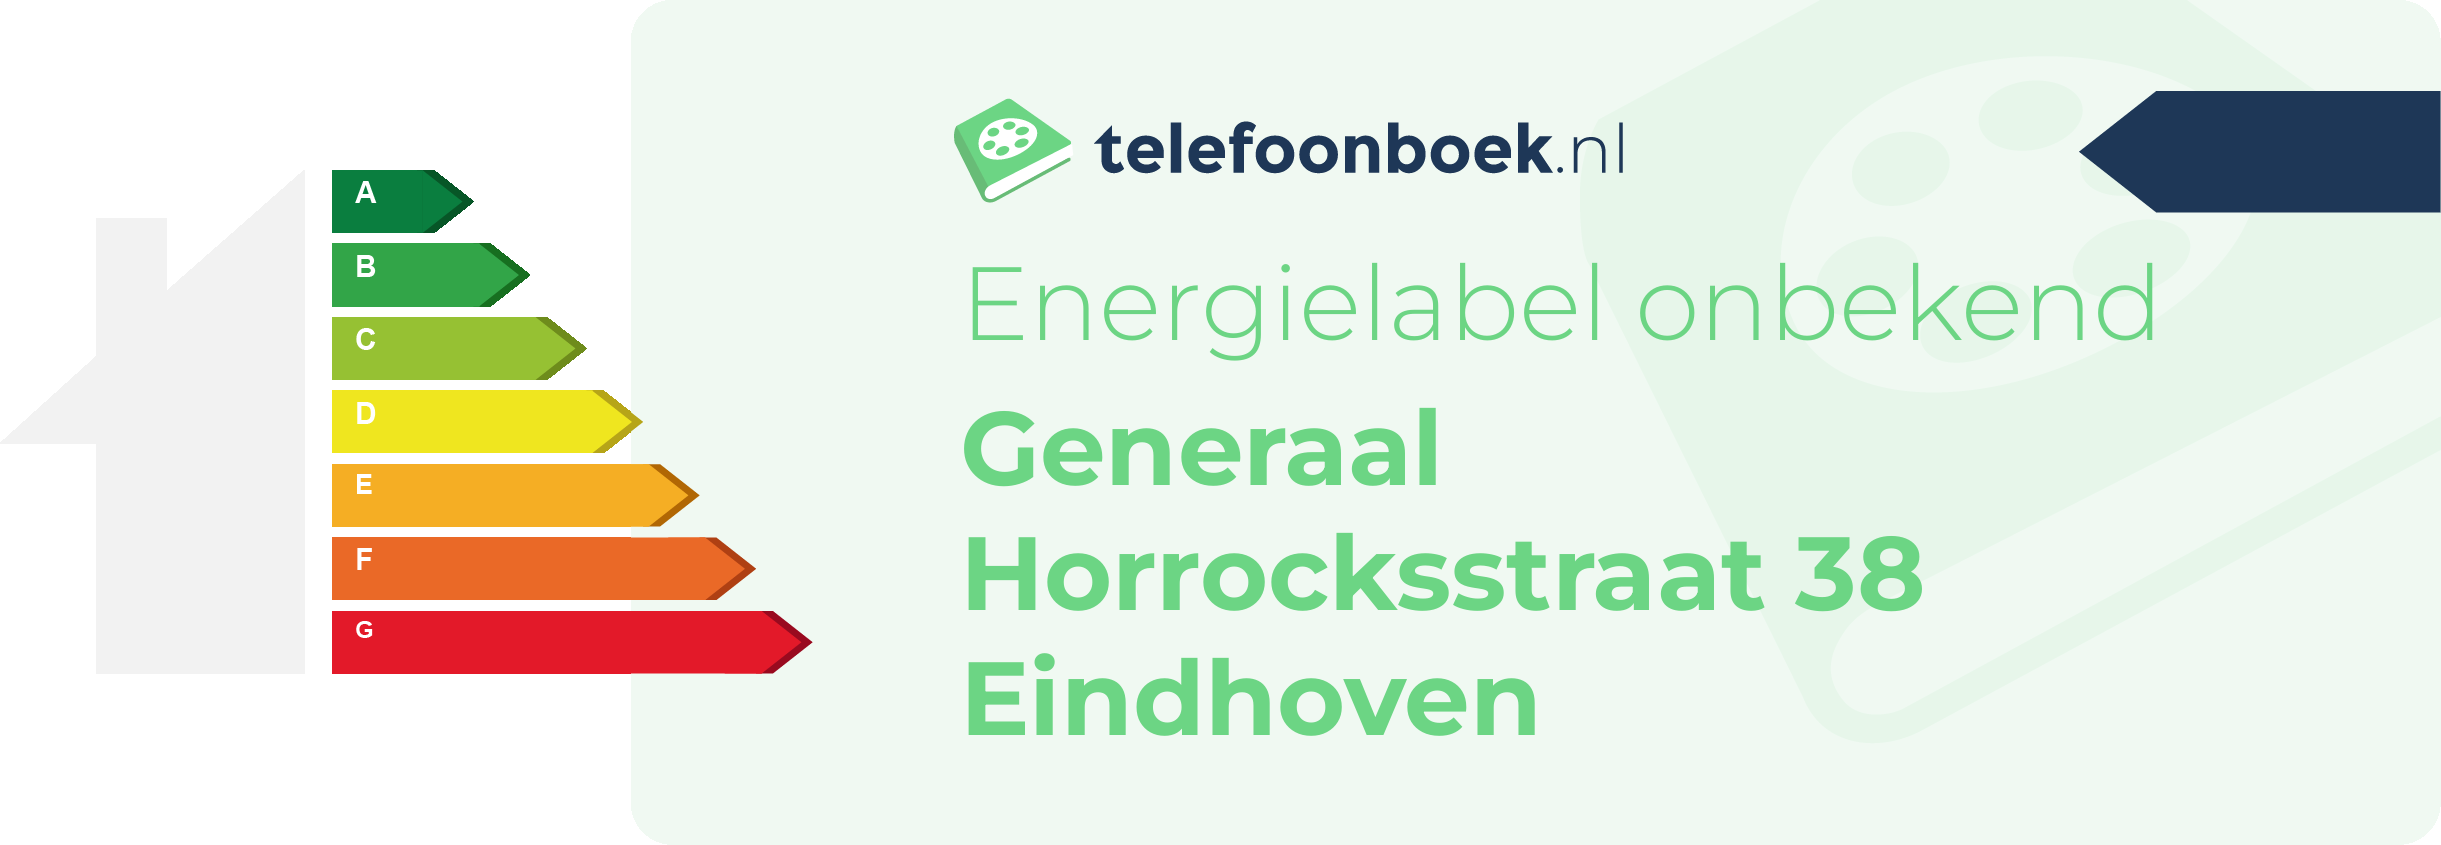 Energielabel Generaal Horrocksstraat 38 Eindhoven